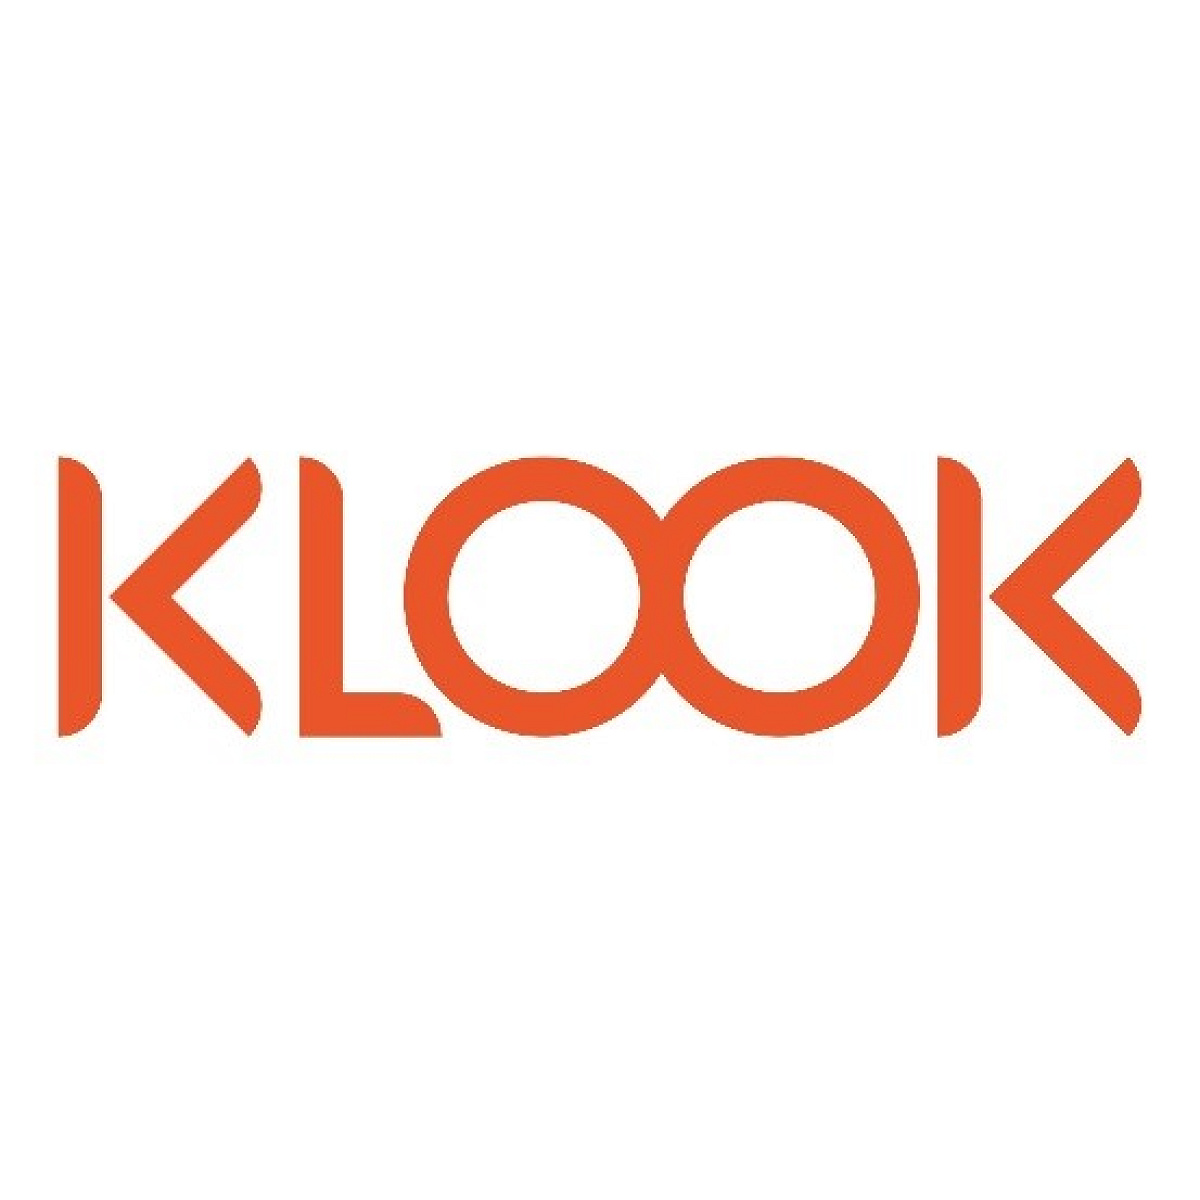 Klook Travelロゴ